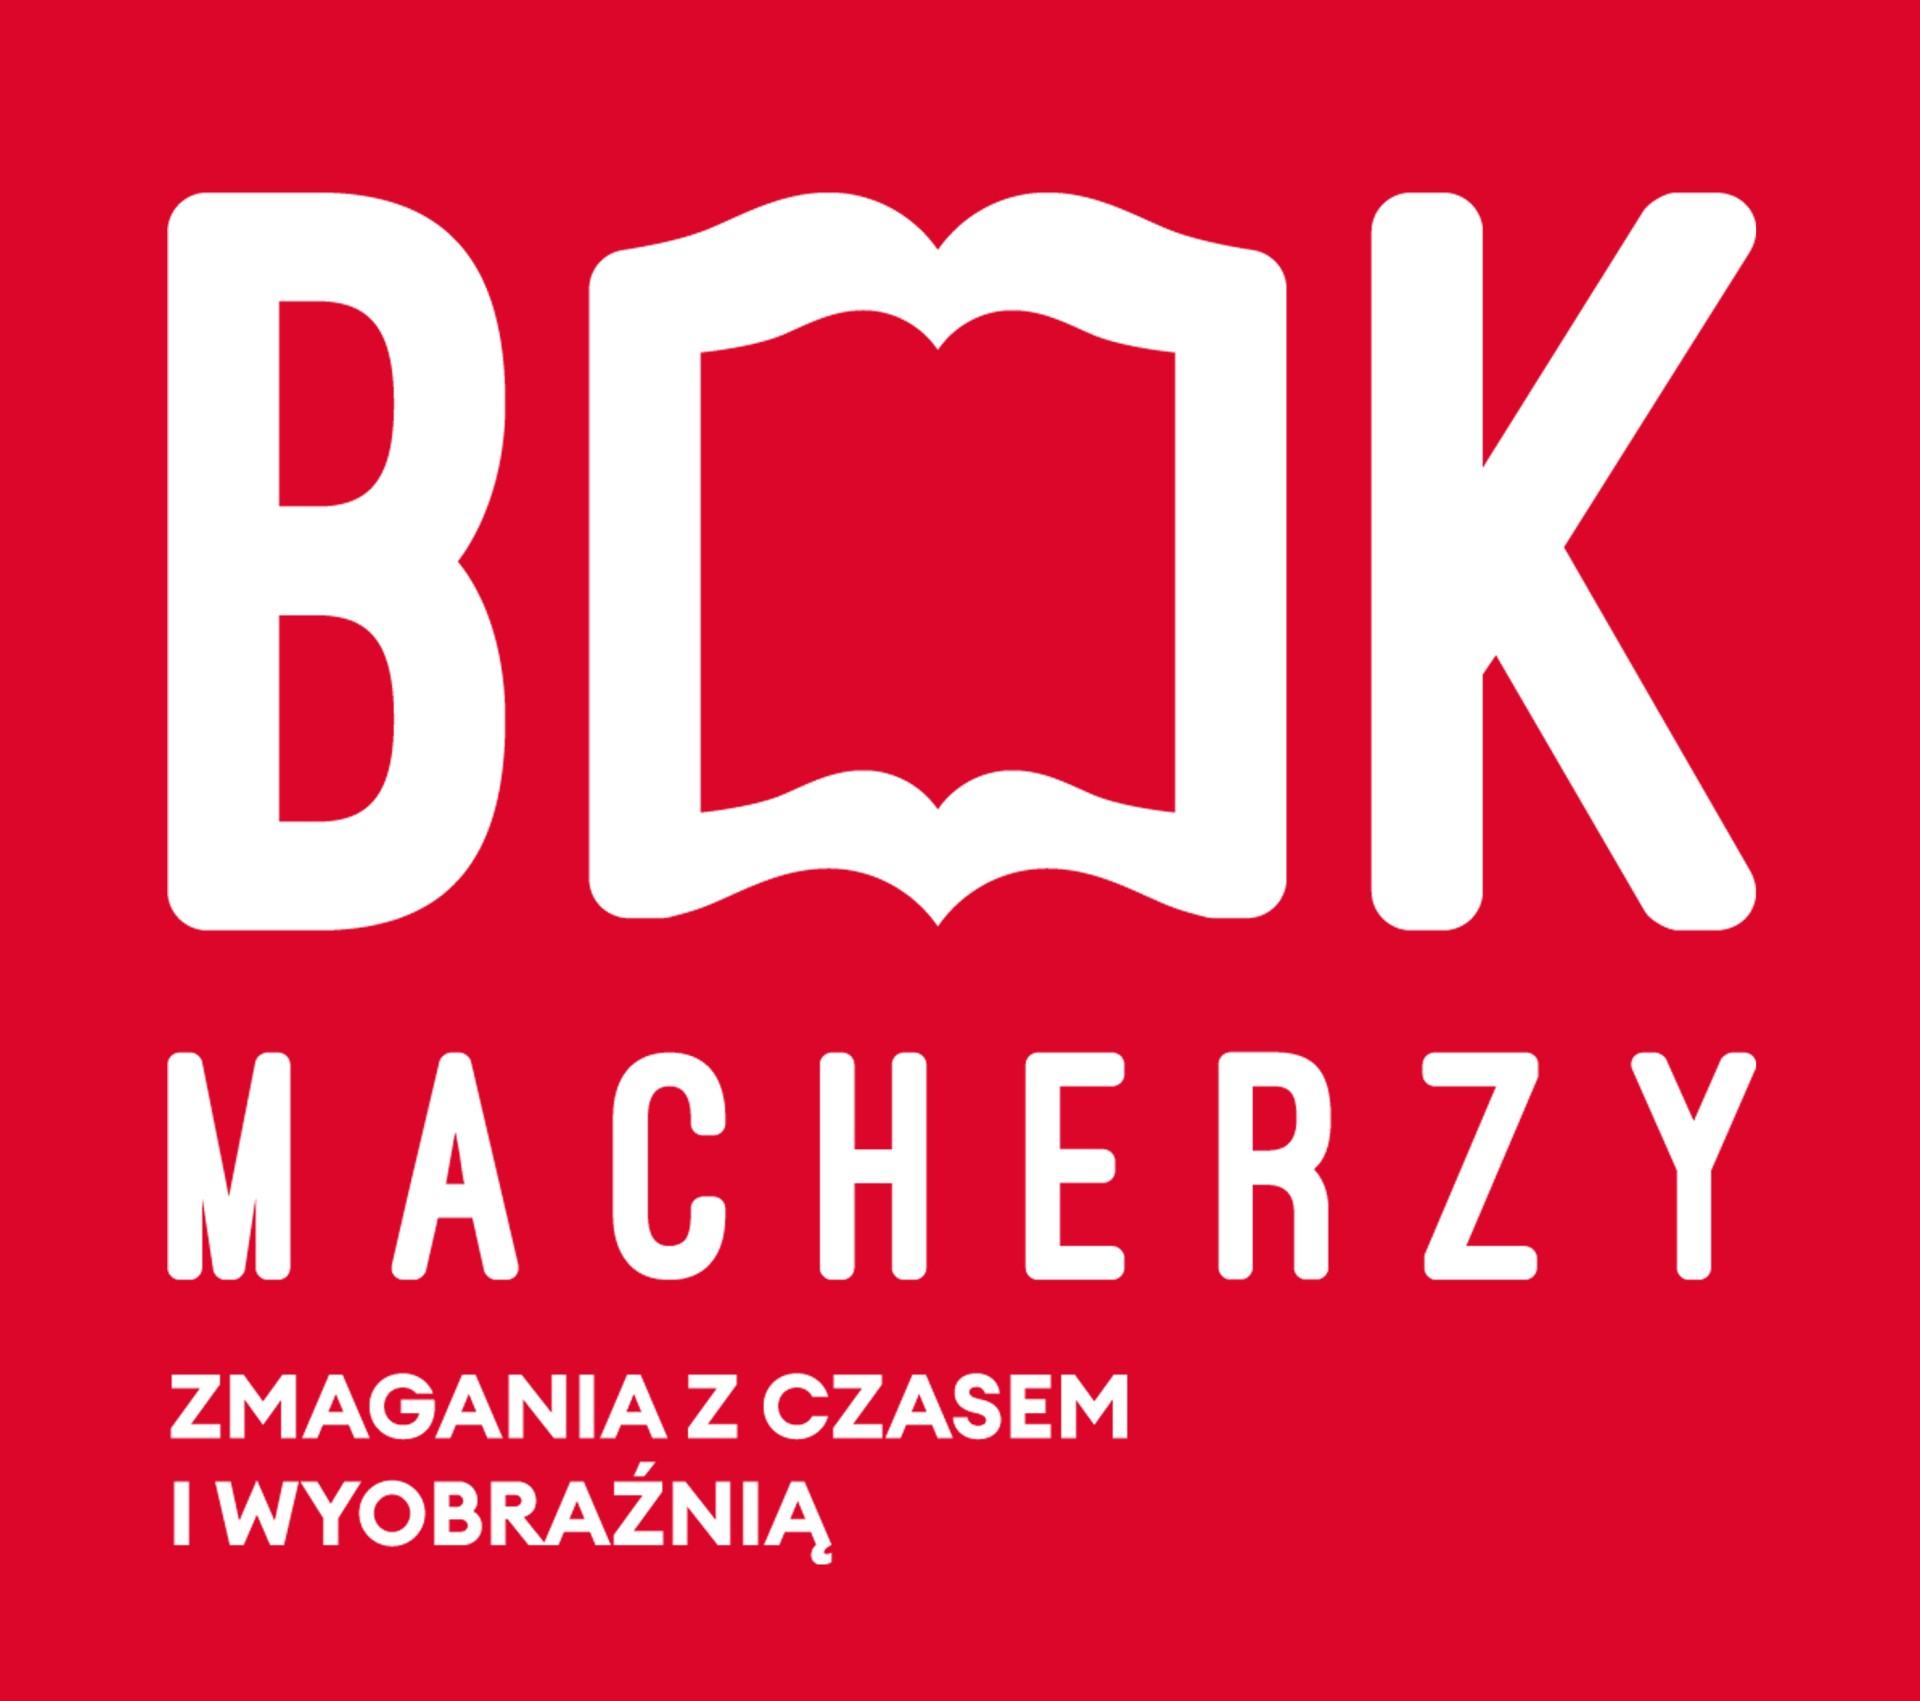 Bookmacherzy